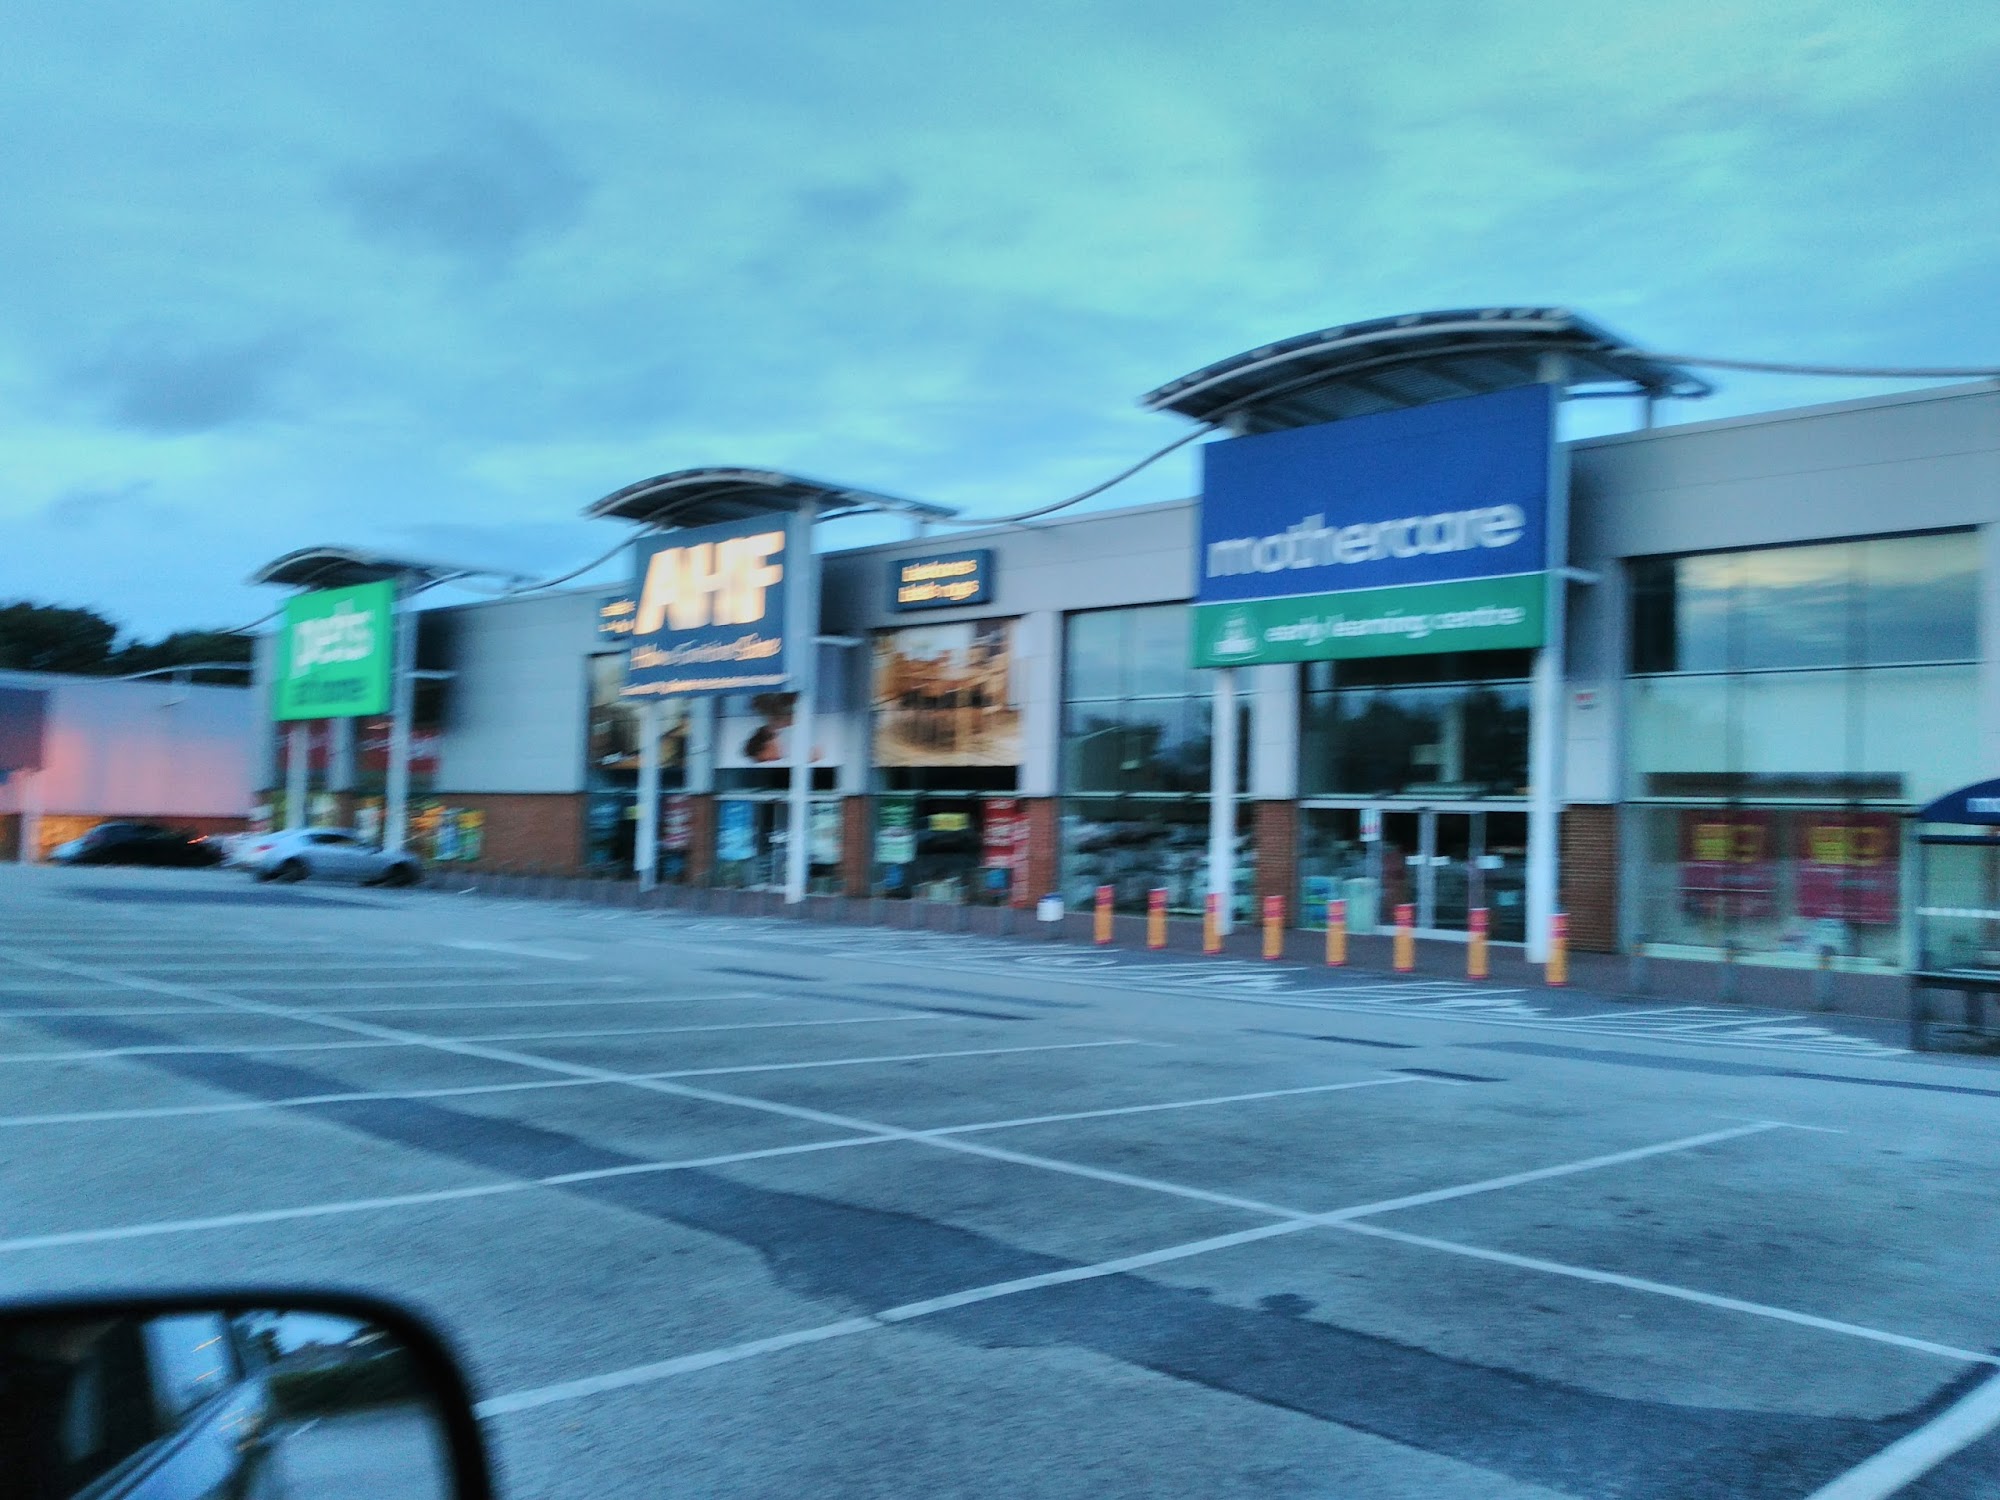 Poole Retail Park